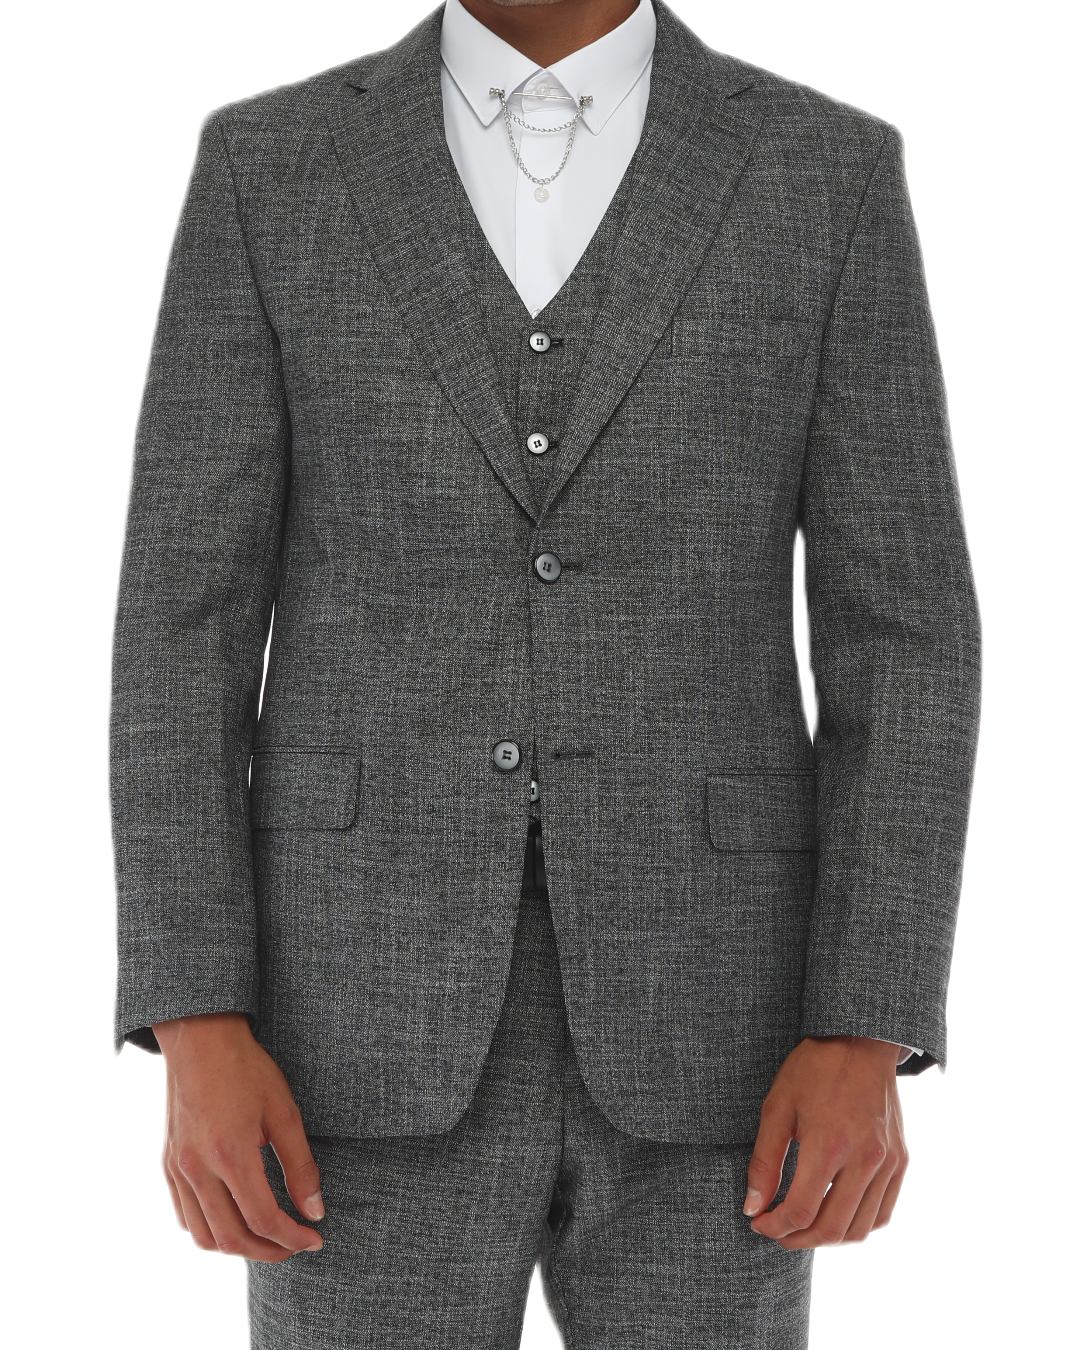 SAV BABYIN - Anzug mit schwarzen Punkten - Dreiteiliger Anzug